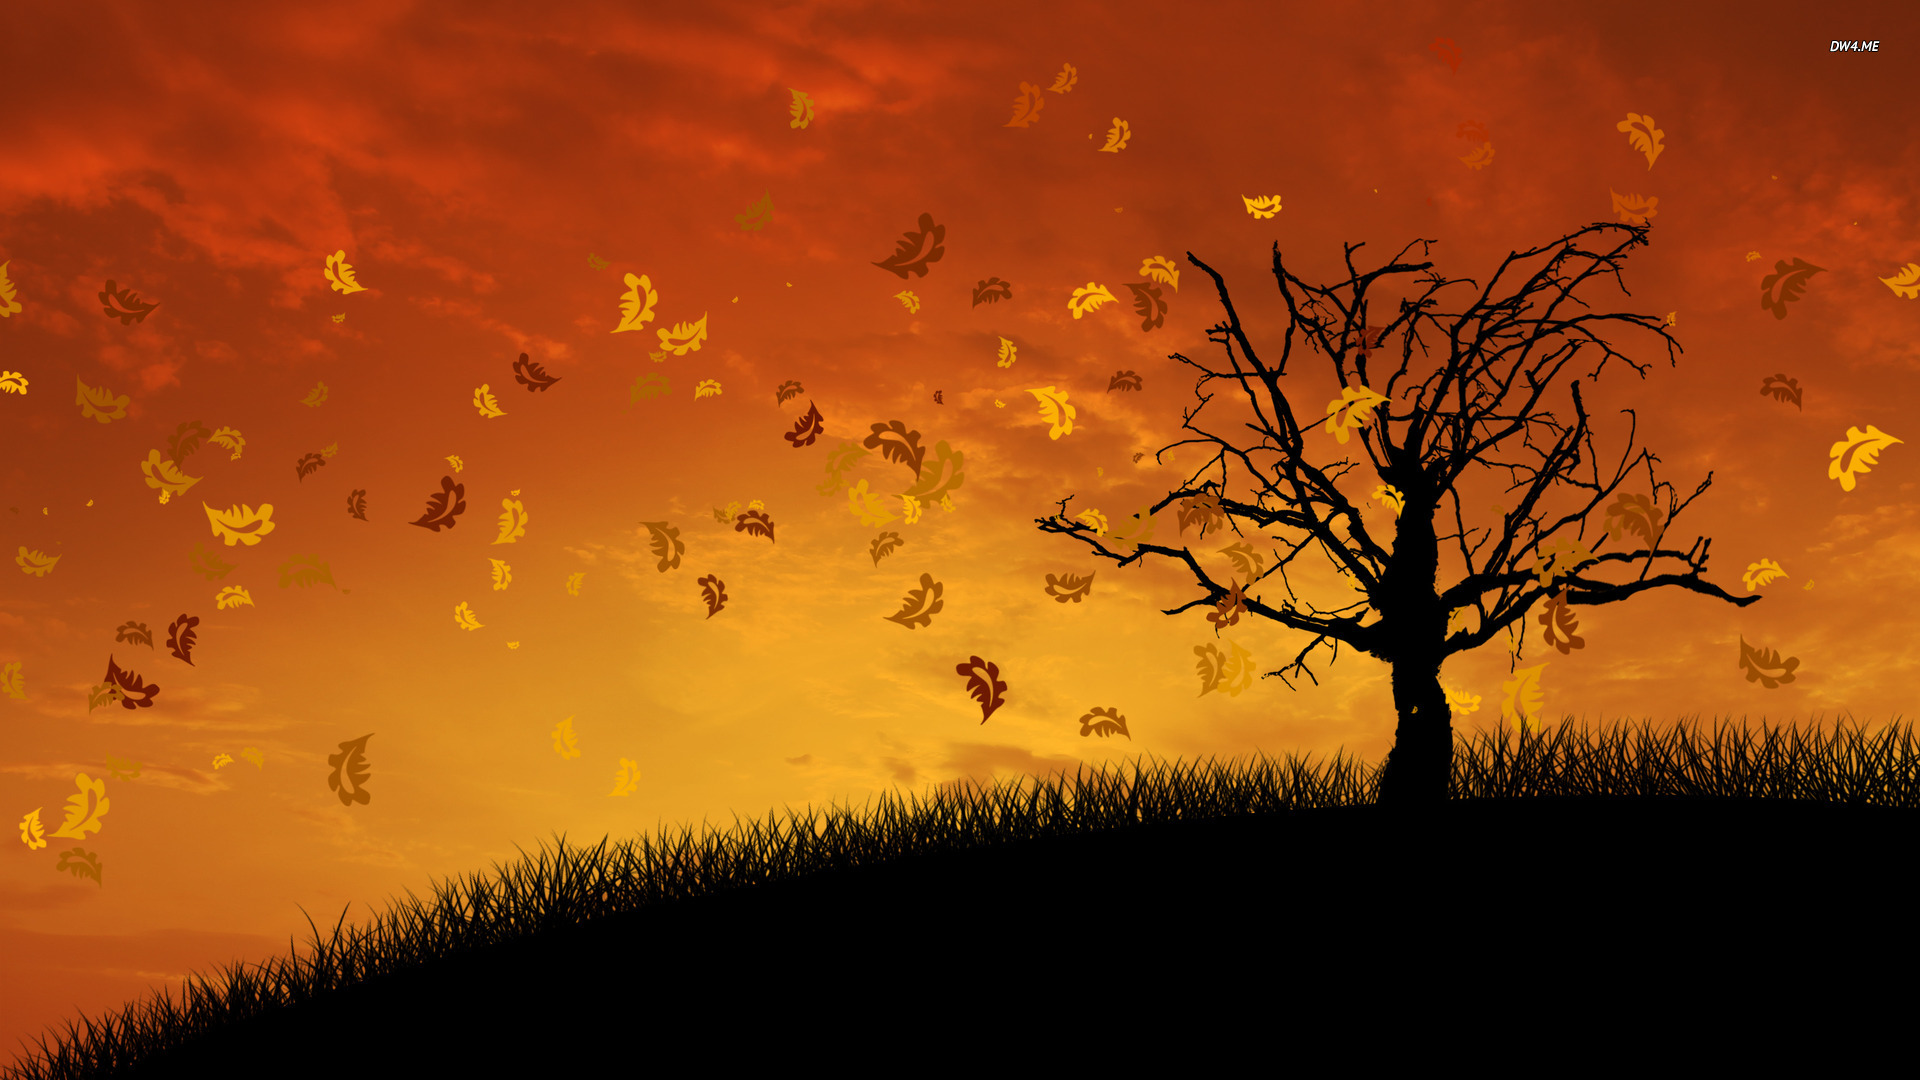 Autumn Desktop Wallpaper